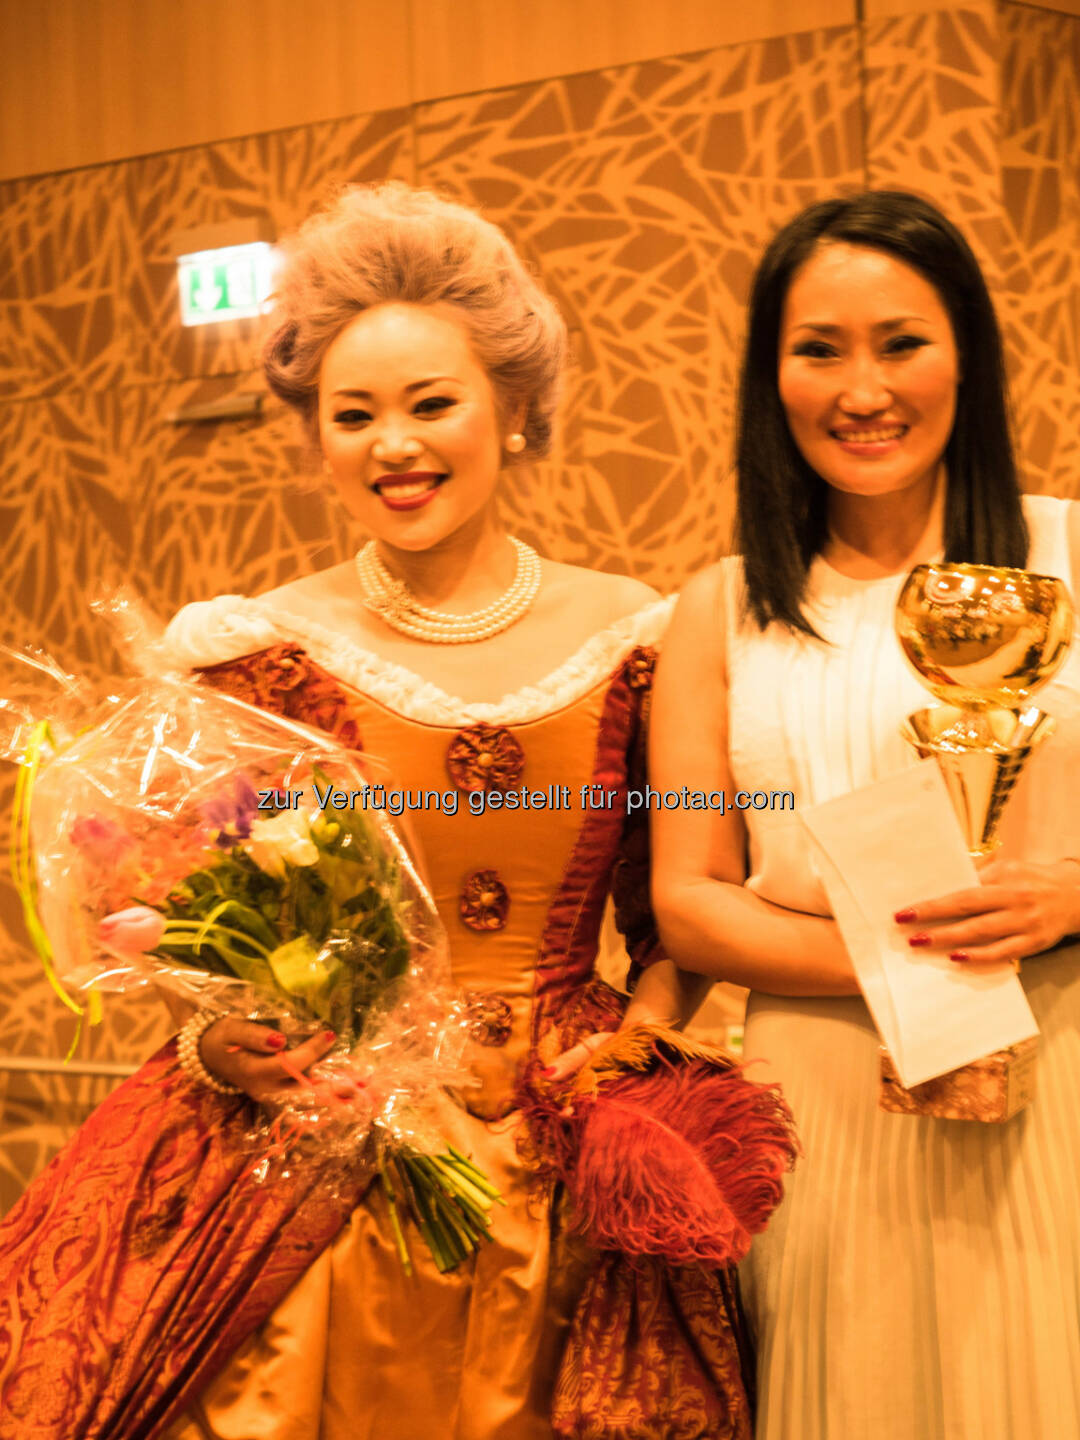 Bayanzul Berisha (Visagistin), Organ Prawang (Opernsängerin) : Visagistin aus der Mongolei siegte bei der 7.Wiener Make-up Meisterschaft in der Kategorie Barock - Rokoko : Fotocredit: Bayanzul Berisha